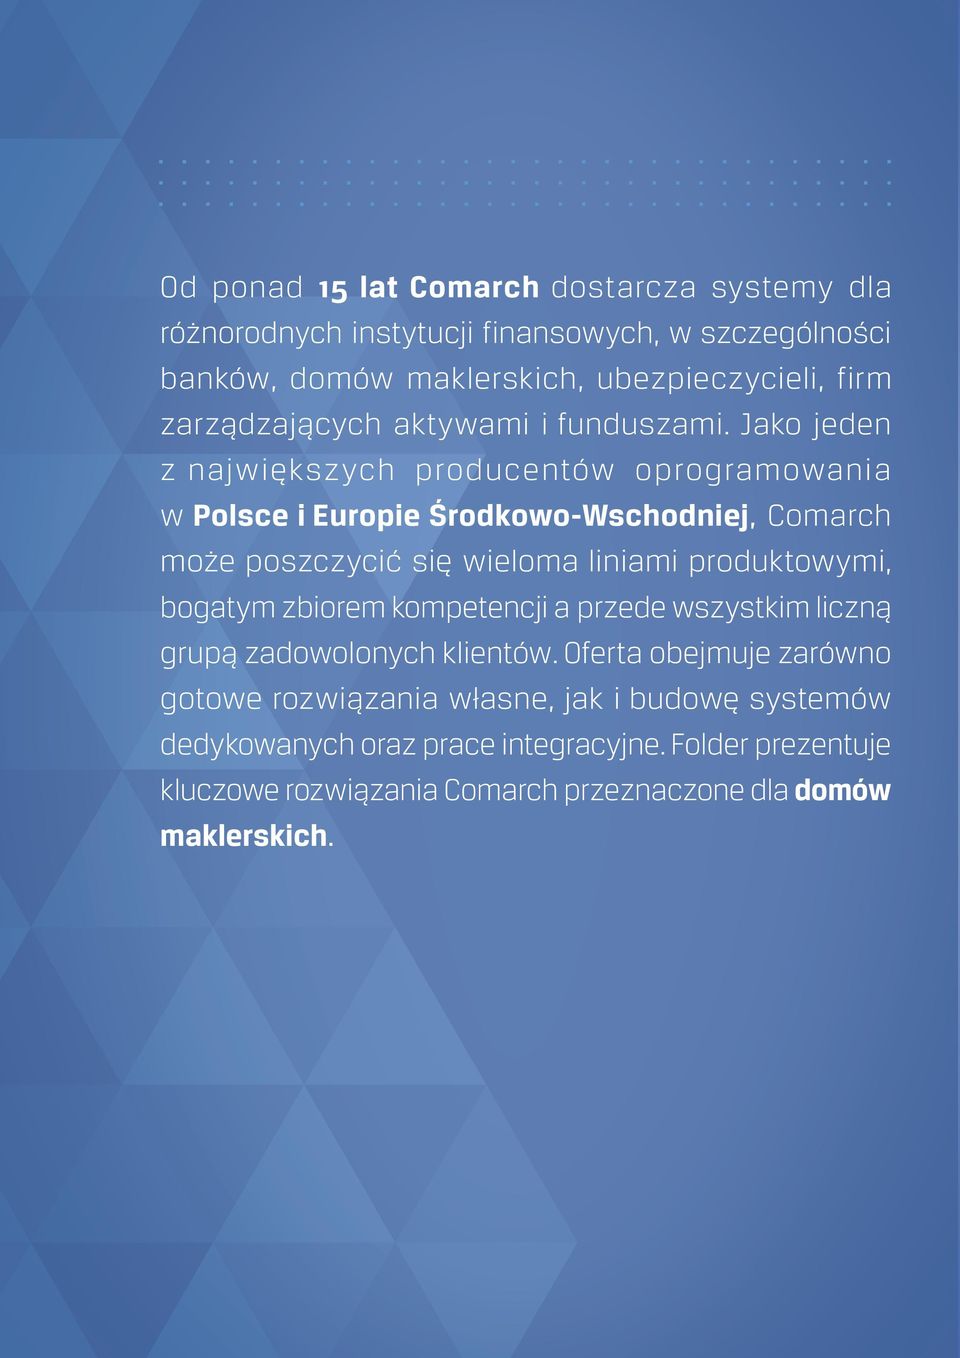 Jako jeden z największych producentów oprogramowania w Polsce i Europie Środkowo-Wschodniej, Comarch może poszczycić się wieloma liniami produktowymi,